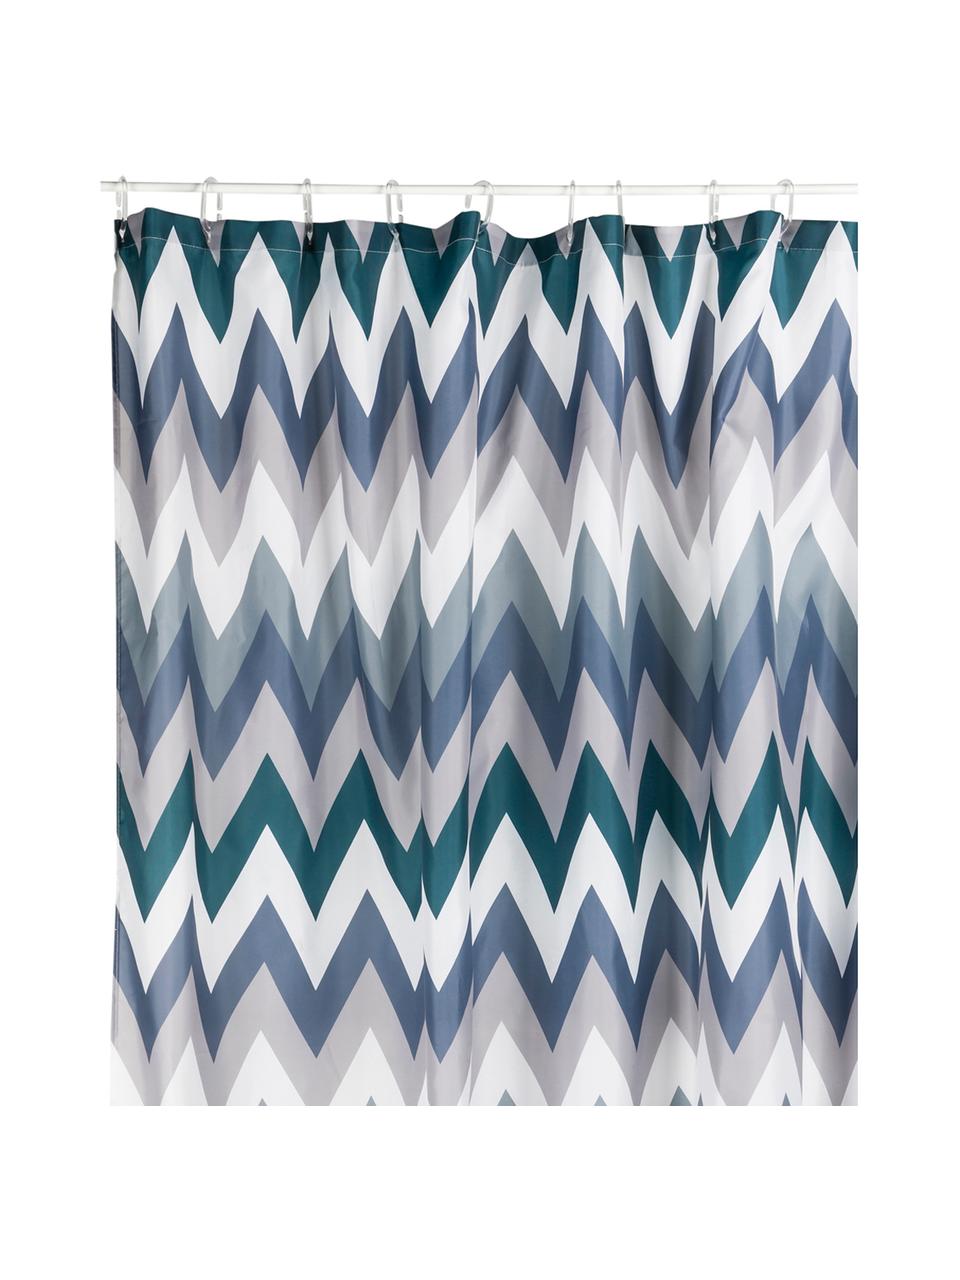 Douchegordijn Hanneke met zigzag patroon, 100% polyester, digital bedrukt
Waterafstotend, niet waterdicht, Blauw, grijs, wit, groen, 180 x 200 cm